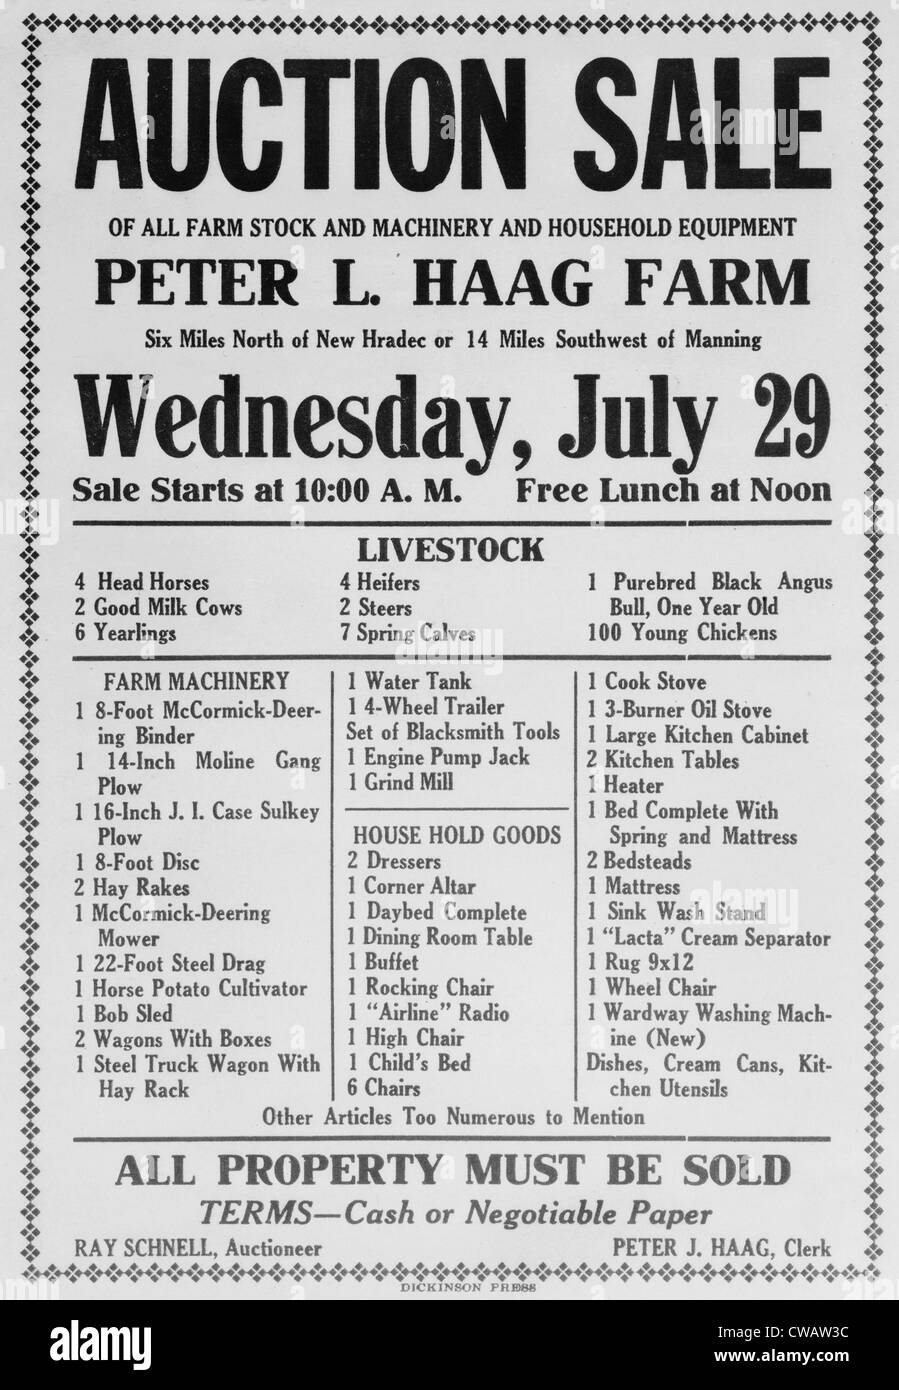 Auktion Verkauf Ankündigung der Farm und Haushalt Vermögenswerte von North Dakota Bauer im Jahr 1936. Bauernfamilien Krise Insolvenz verursacht Stockfoto